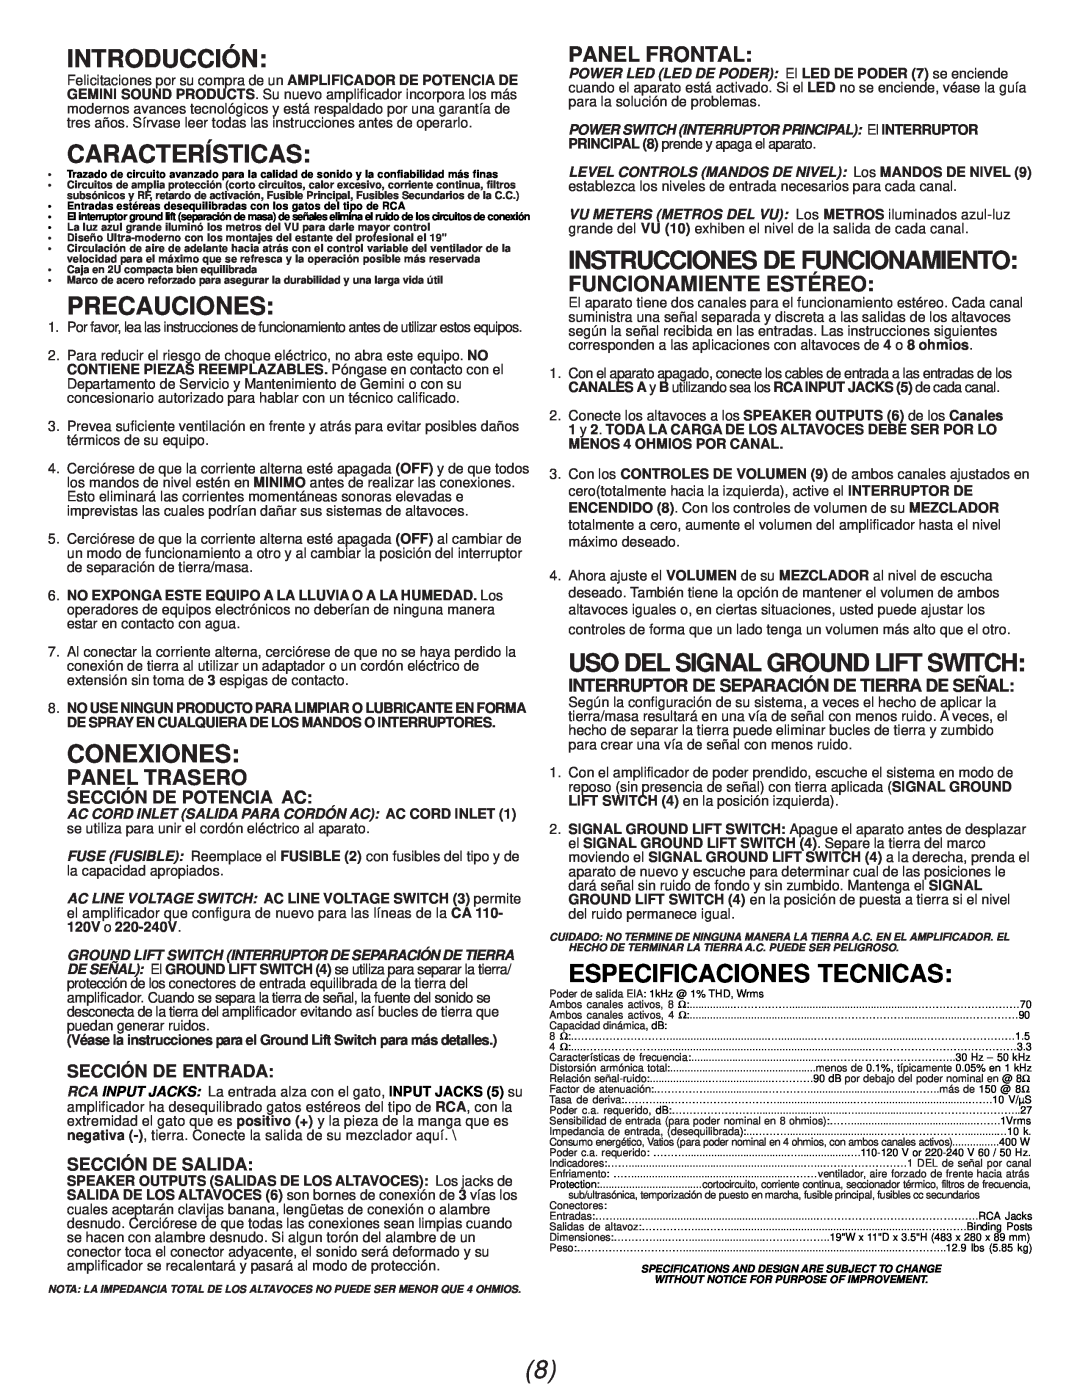 Gemini P-07 manual Introducción, Características, Precauciones, Conexiones, Instrucciones De Funcionamiento, Panel Trasero 